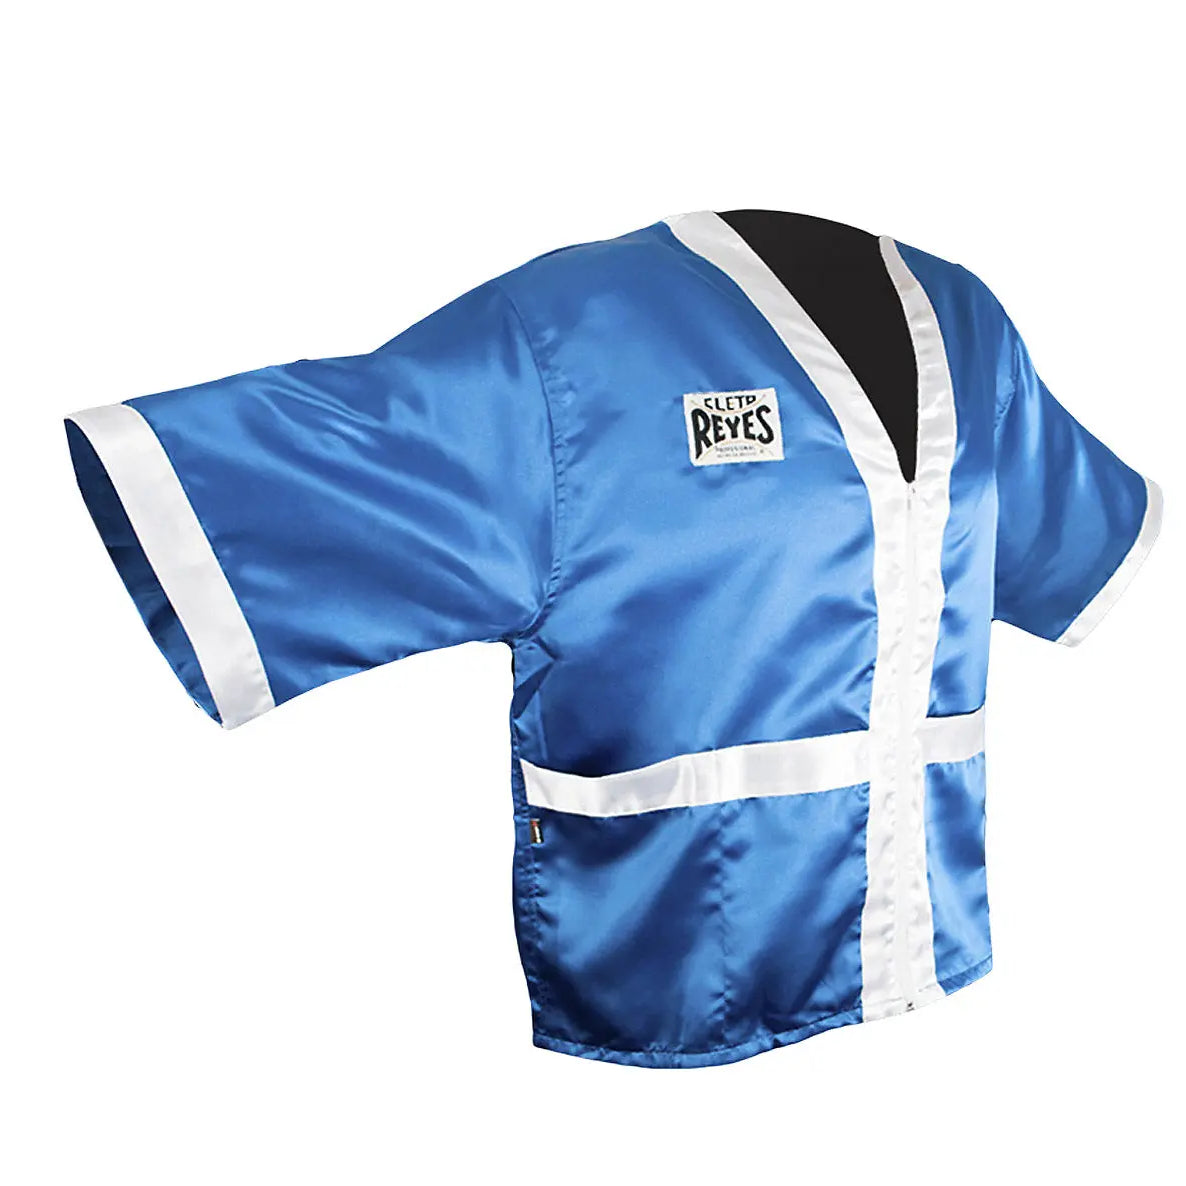 Cleto Reyes Corner Staff Satin Boxing Robe - Blue/White Cleto Reyes